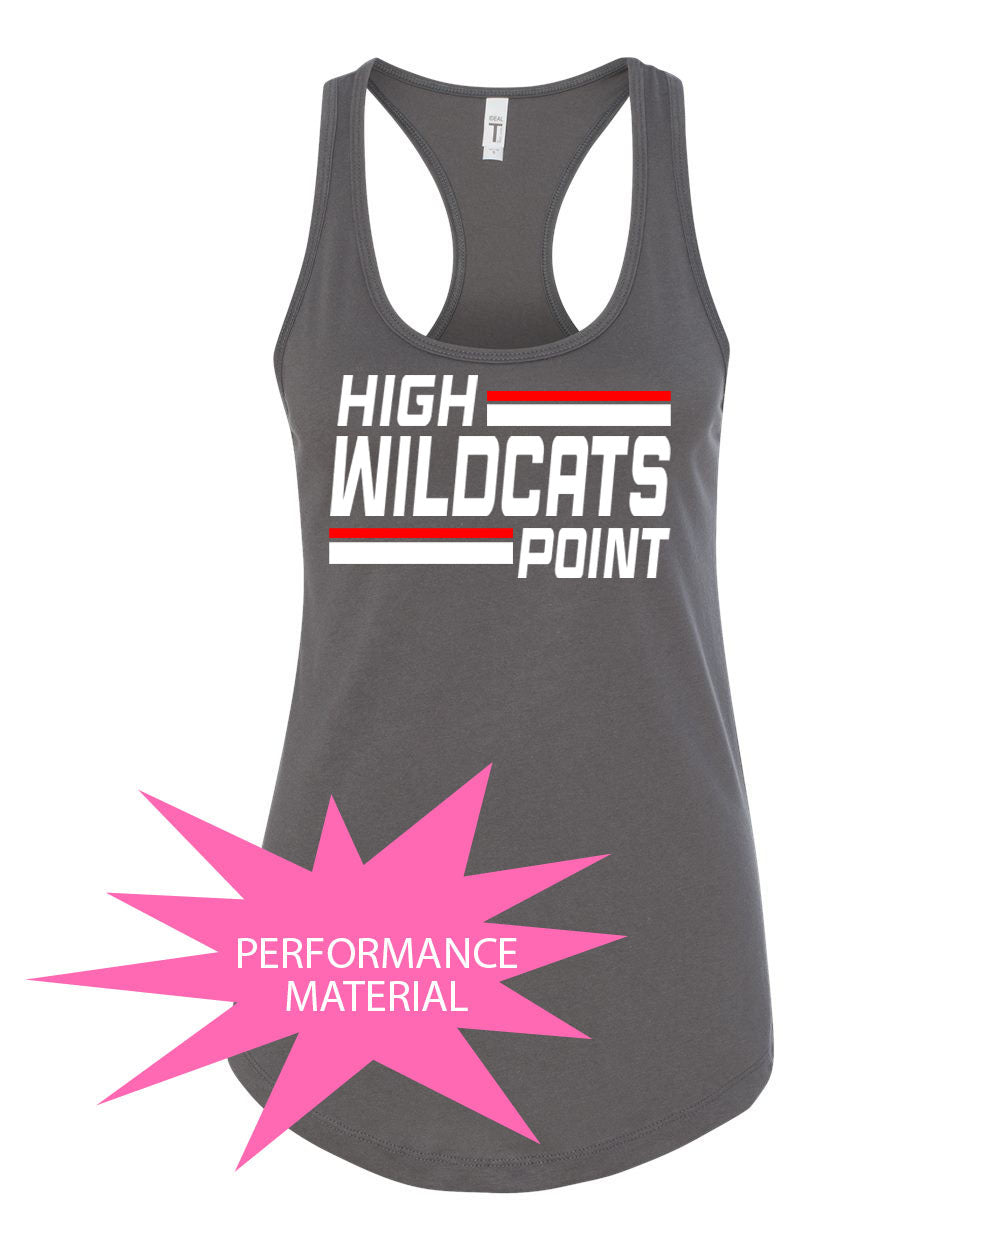 Wildcats Cheer Design 4 Performance Racerback Tank Top